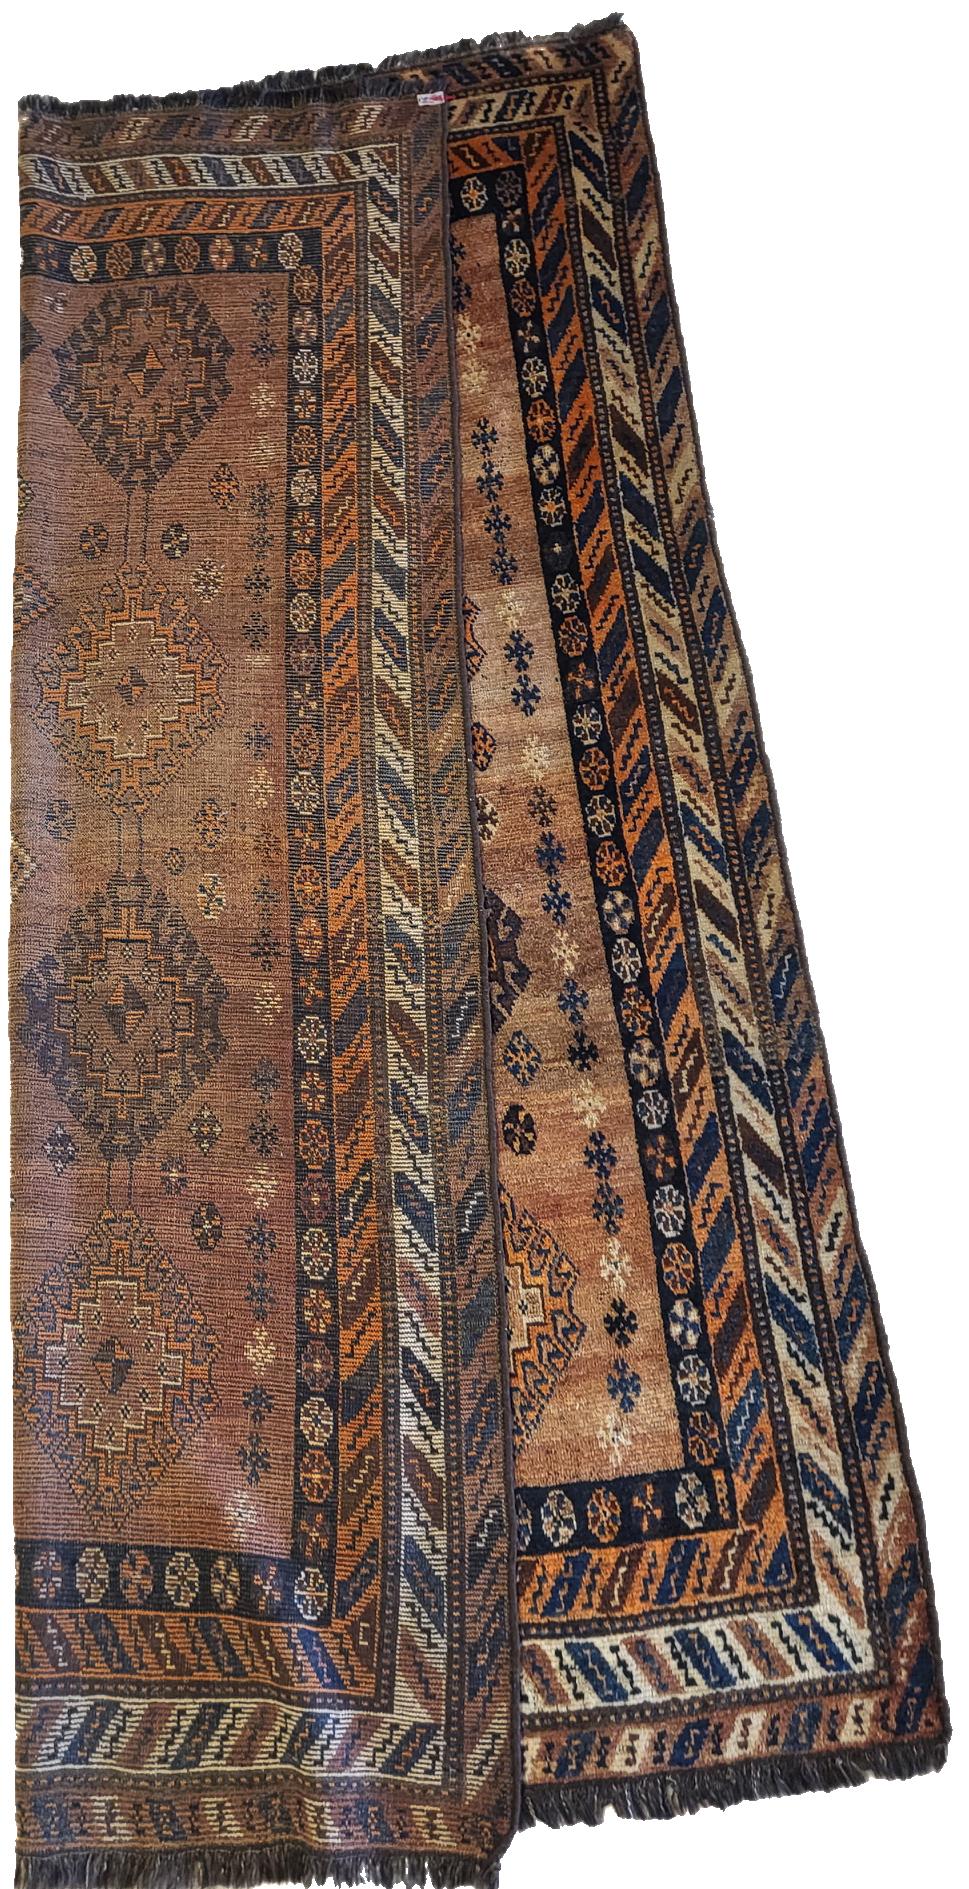 Superbe tapis Lori de la fin du 19e siècle

5' 3